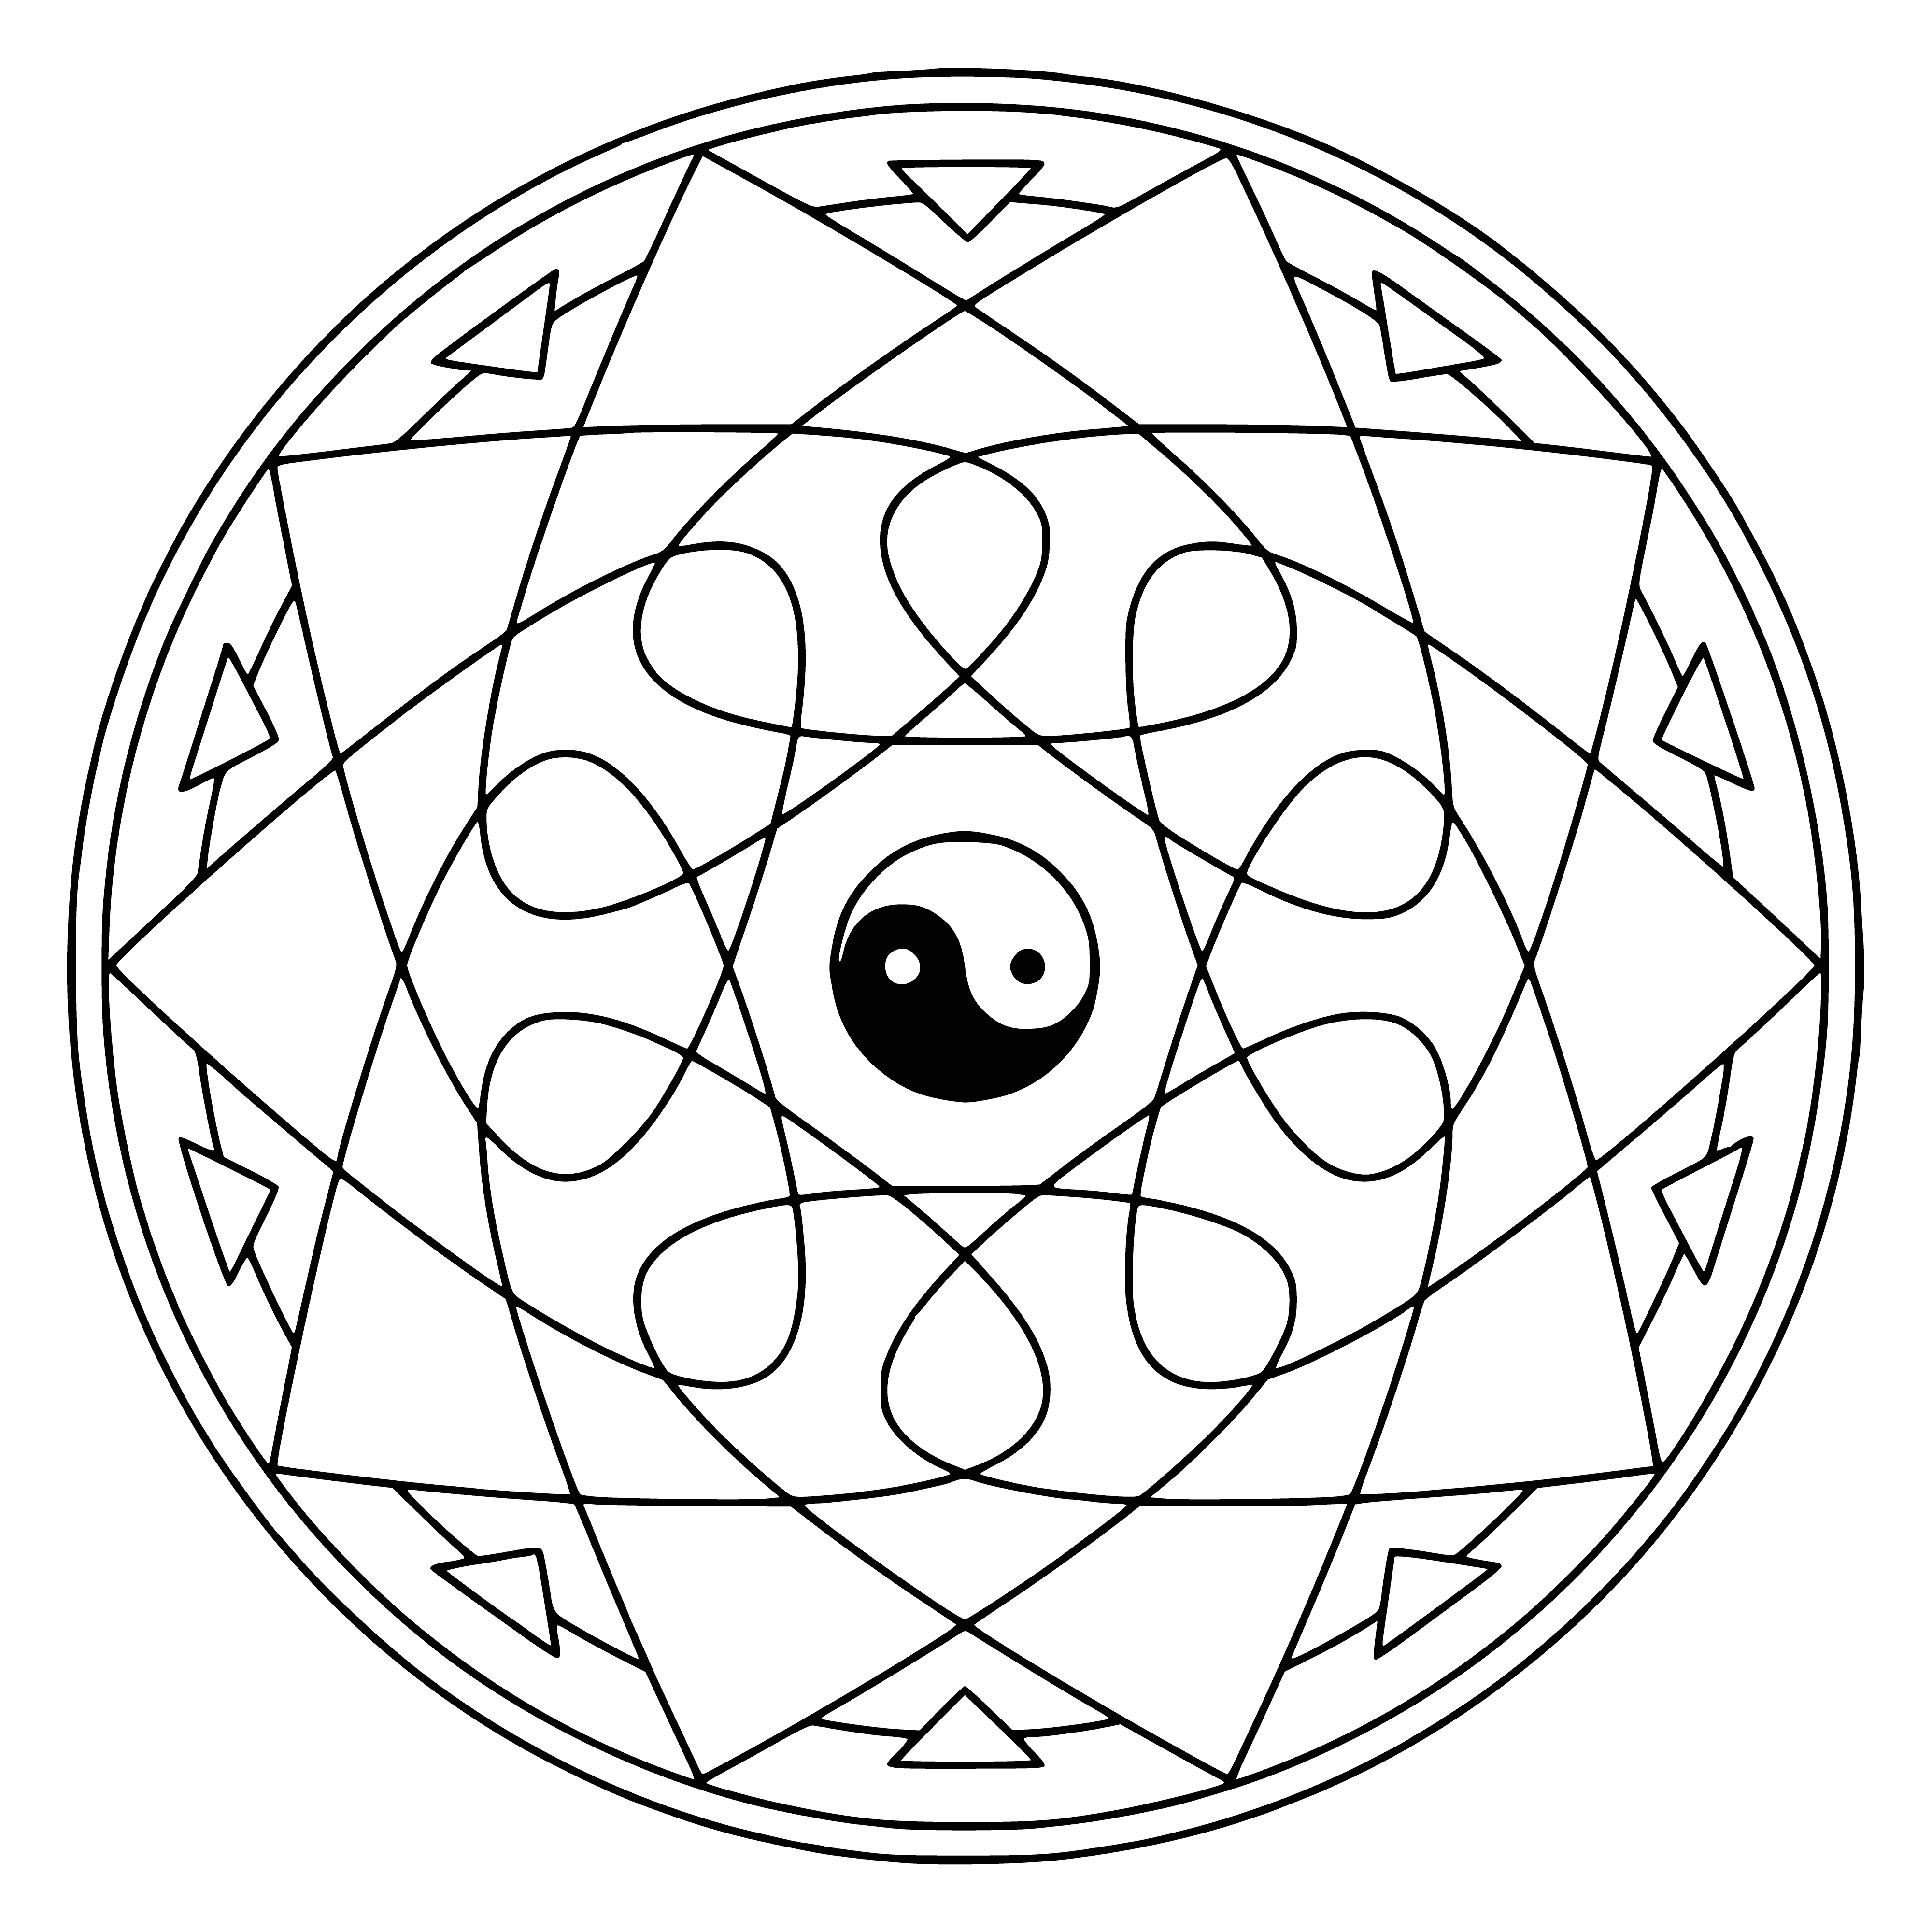 Mandala with Yin-Yang symbol coloring page